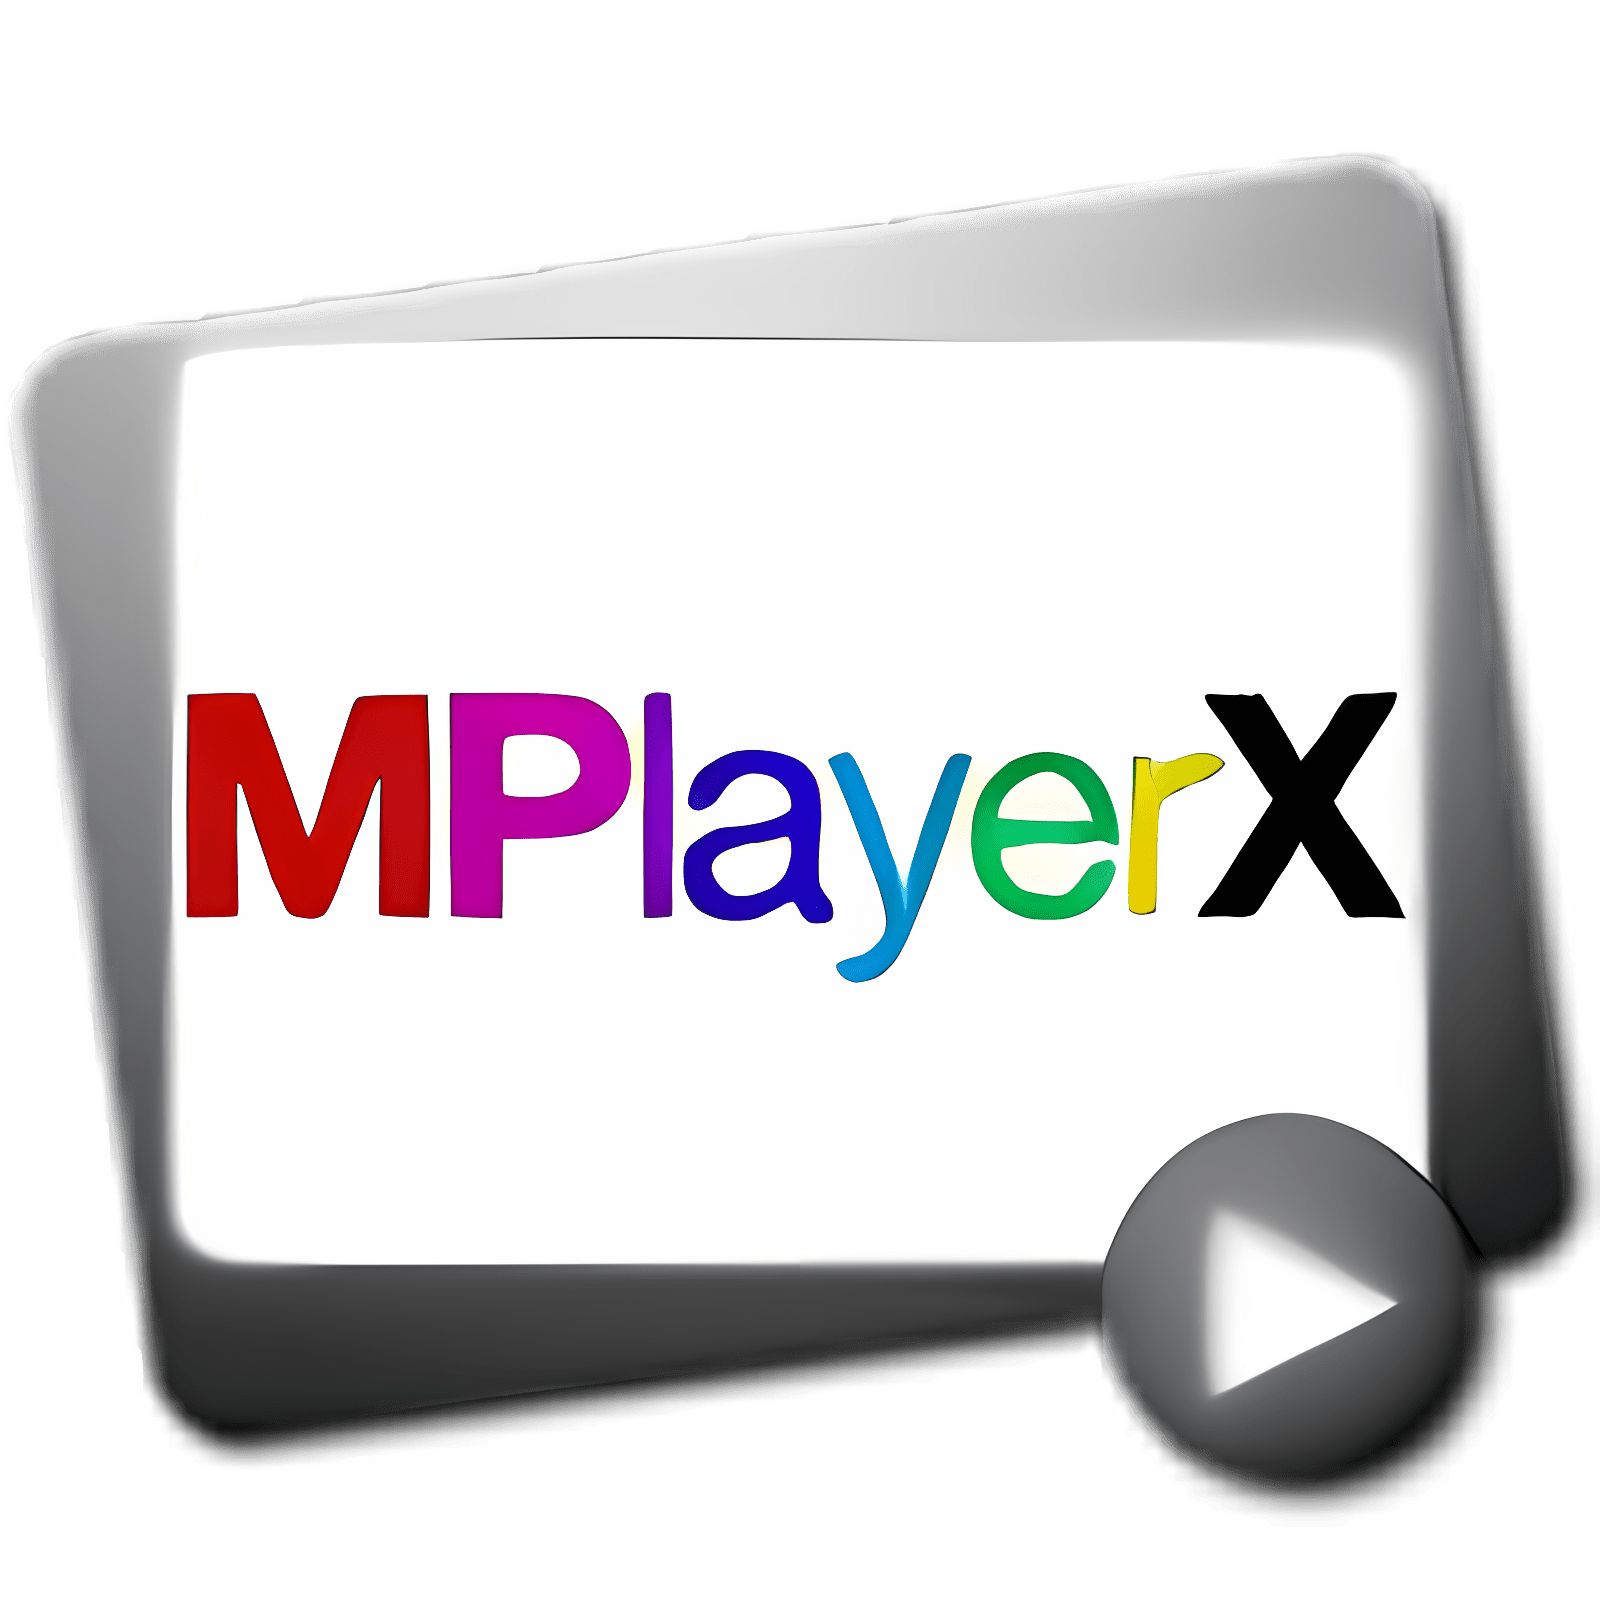 mplayerx download for mac